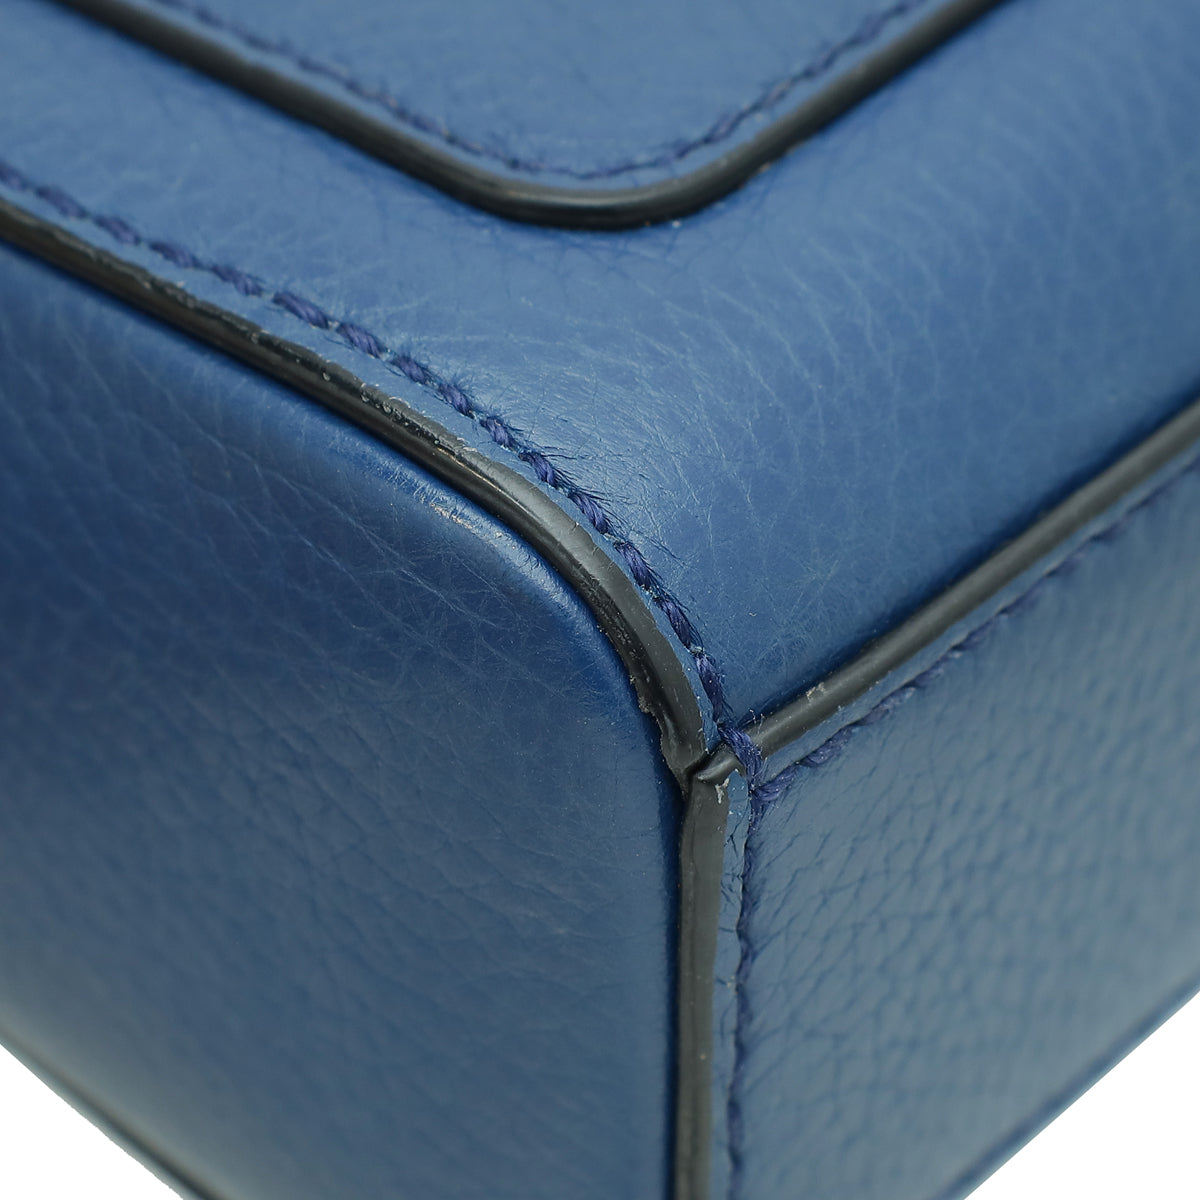 Dolce & Gabbana Blue Padlock Flap Shoulder Bag